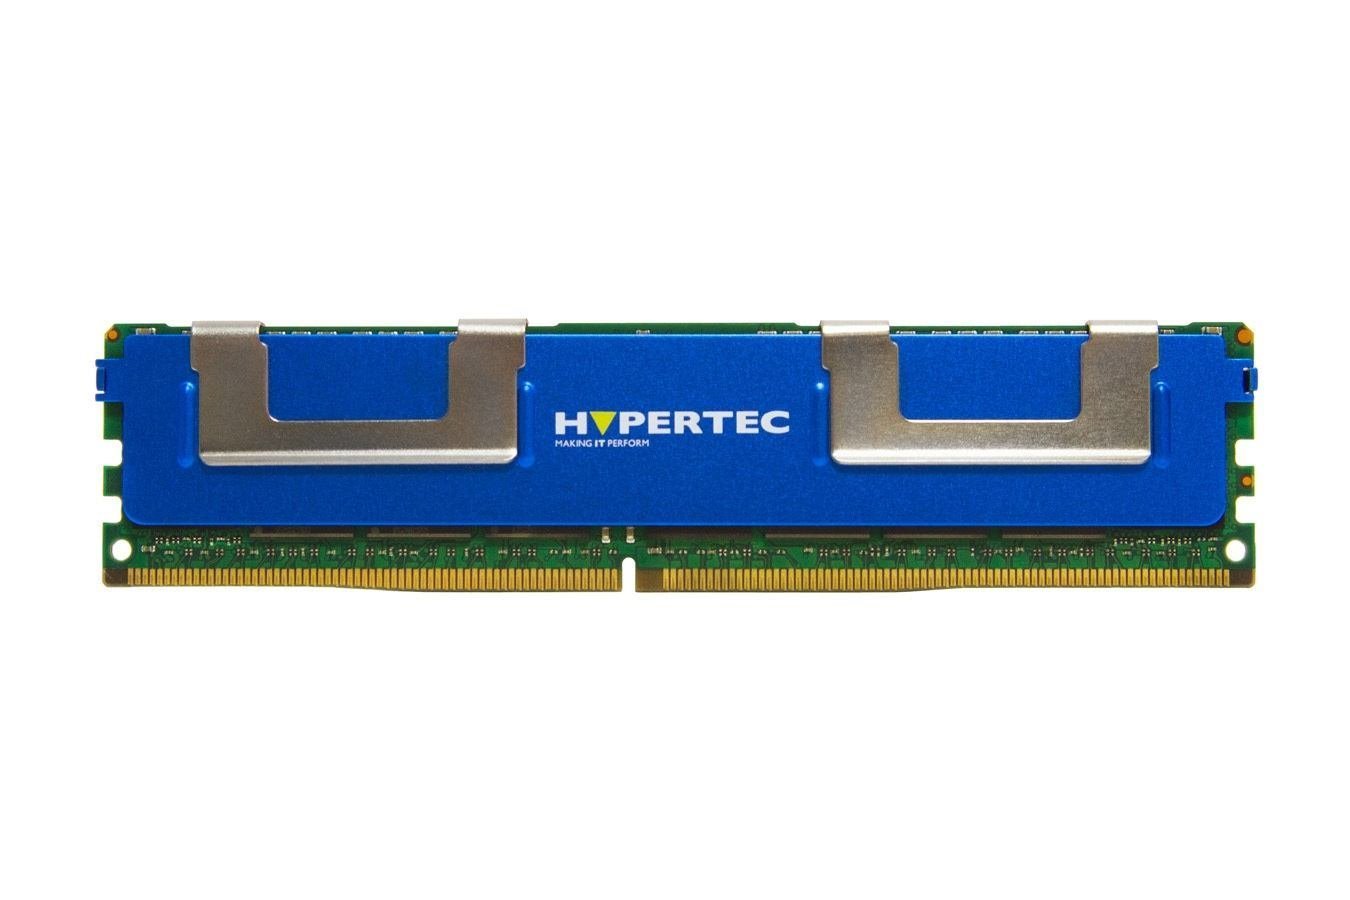 Hypertec 0A65733-Hy Memory Module 8 GB 1 X 8 GB DDR3 1600 MHz Ecc (A Lenovo Equivalent 8 GB Registered Ecc DDR3 Sdram - Dimm 240-Pin 1600 MHz [ PC3-12800 ]Legacy [1Year Warranty])